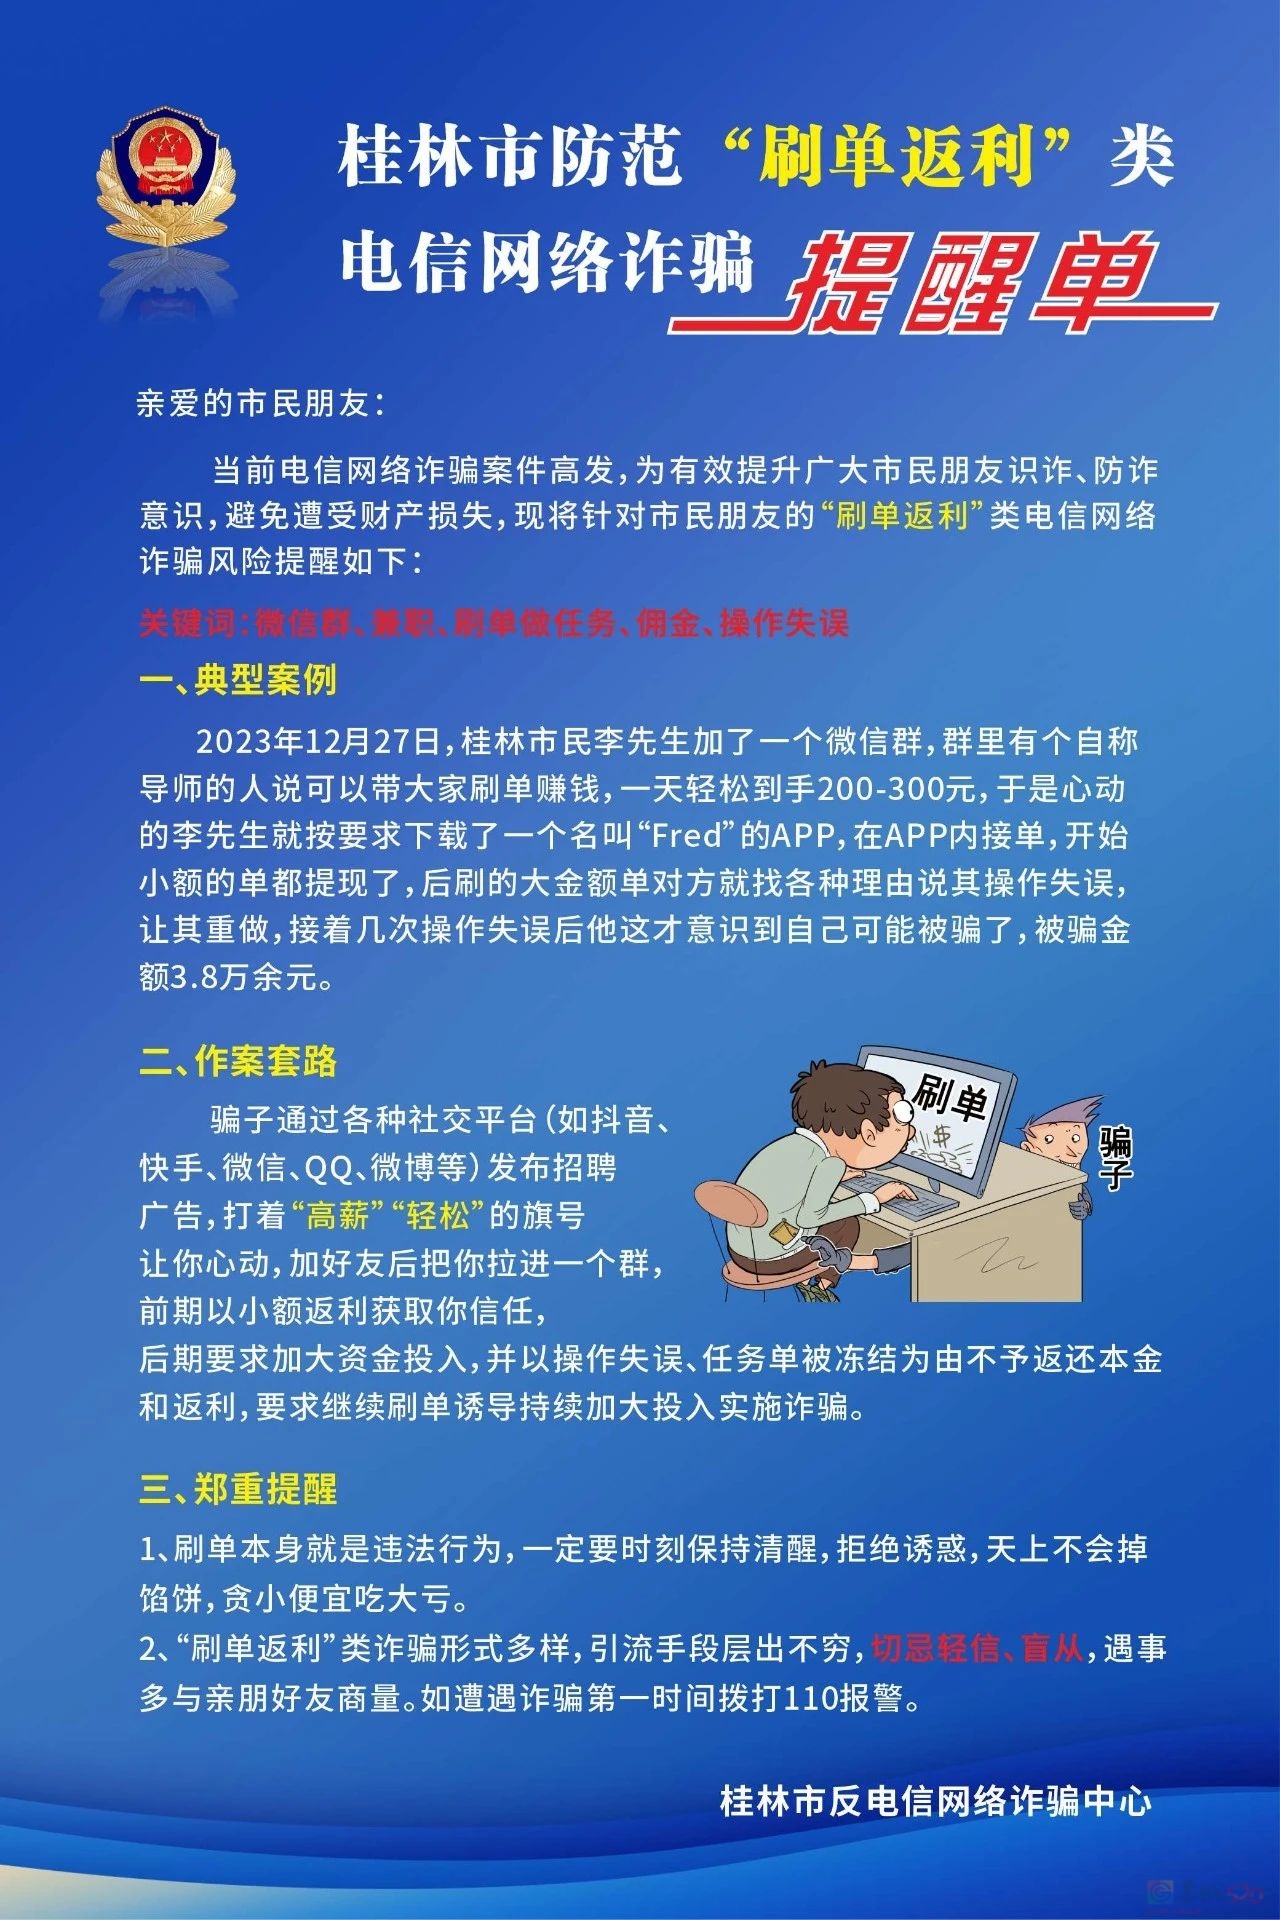 近期多人被骗！桂林警方紧急提醒321 / 作者:尹以为荣 / 帖子ID:313232